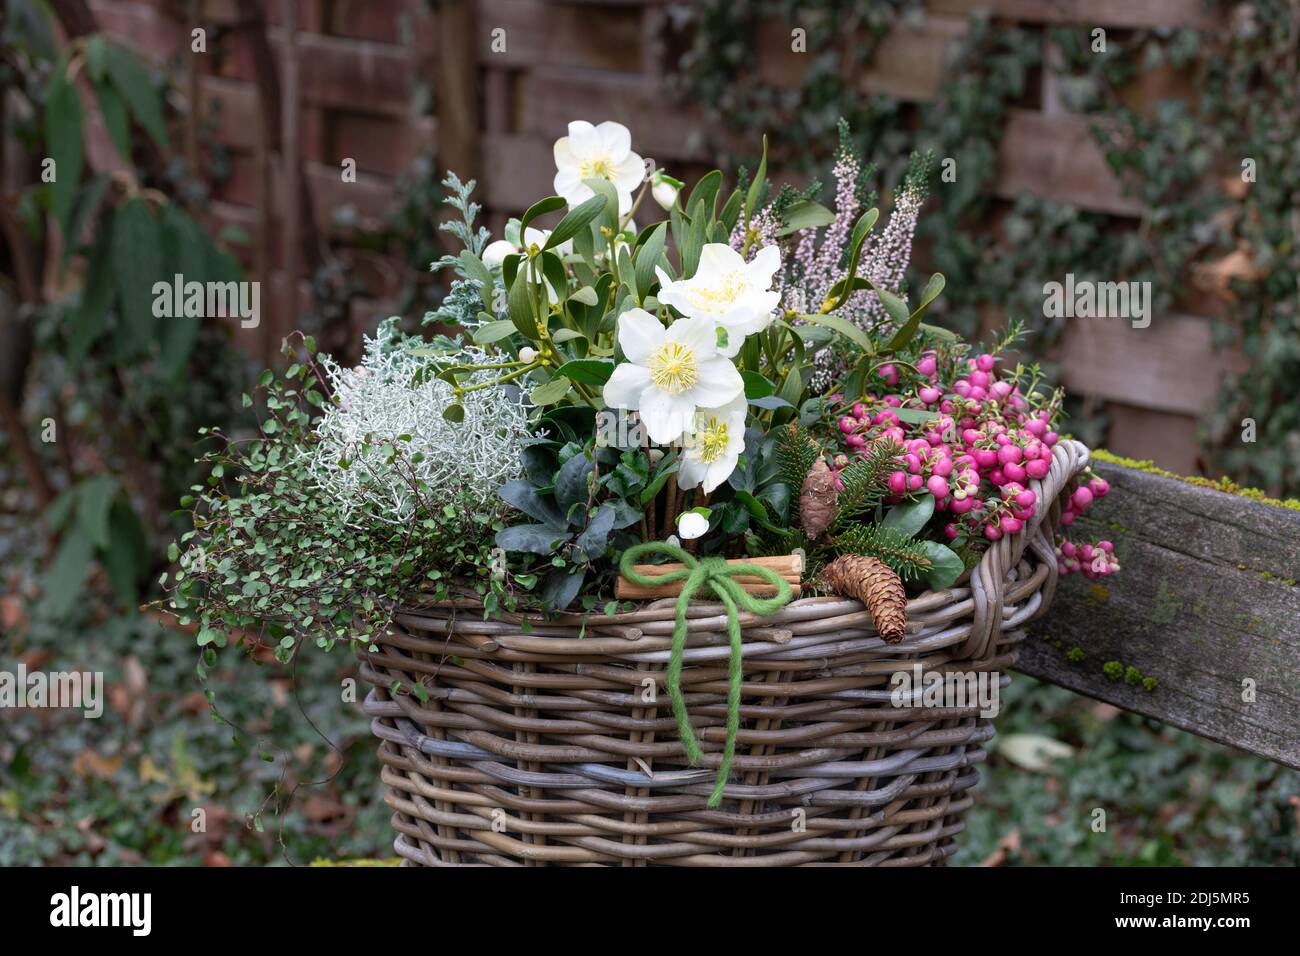 cesto con helleborus niger, brughiera, fiore di erica, mistletoe e cespuglio cuscino in giardino d'inverno Foto Stock